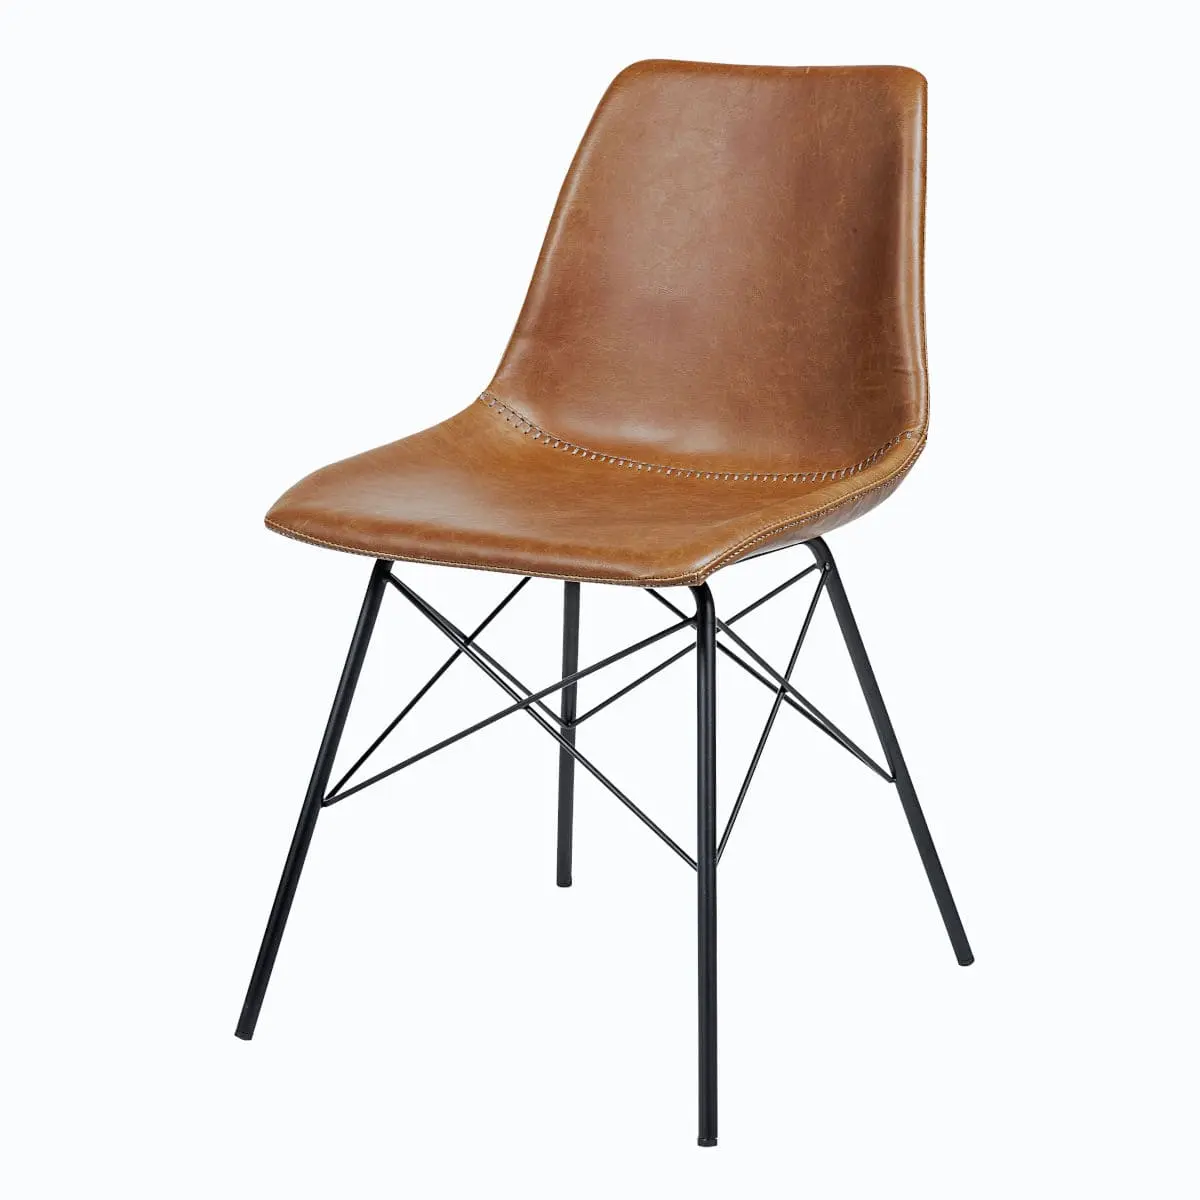 Moderner Stuhl mit Polster braun Gestell schwarz Industrial Style